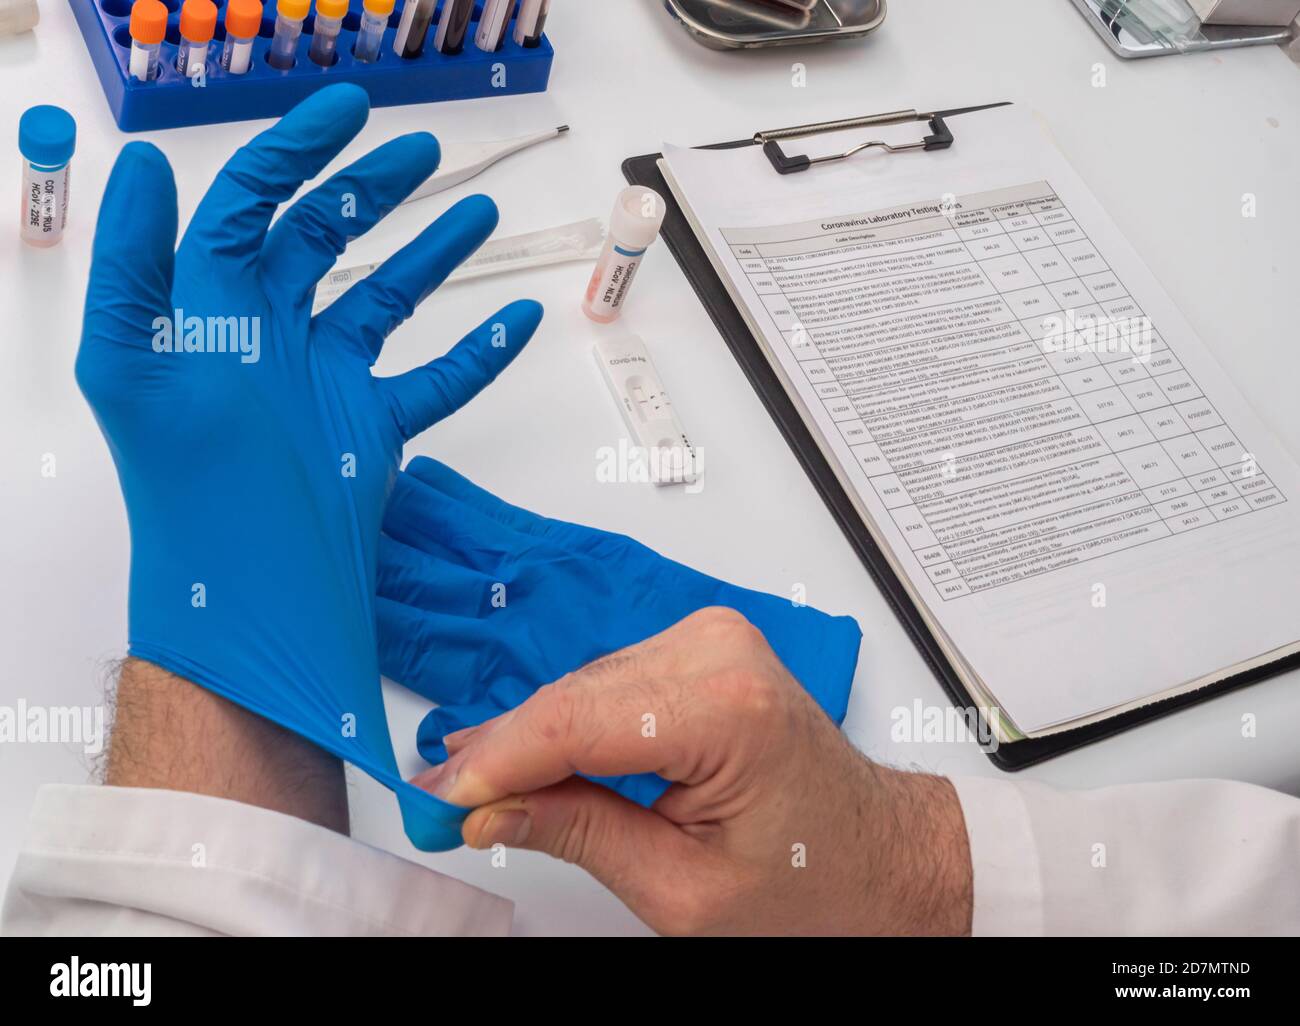 Krankenschwester, die Latexhandschuh zur Analyse positiver covid-19-Testergebnisse infizierter Personen platziert, konzeptuelles Bild Stockfoto